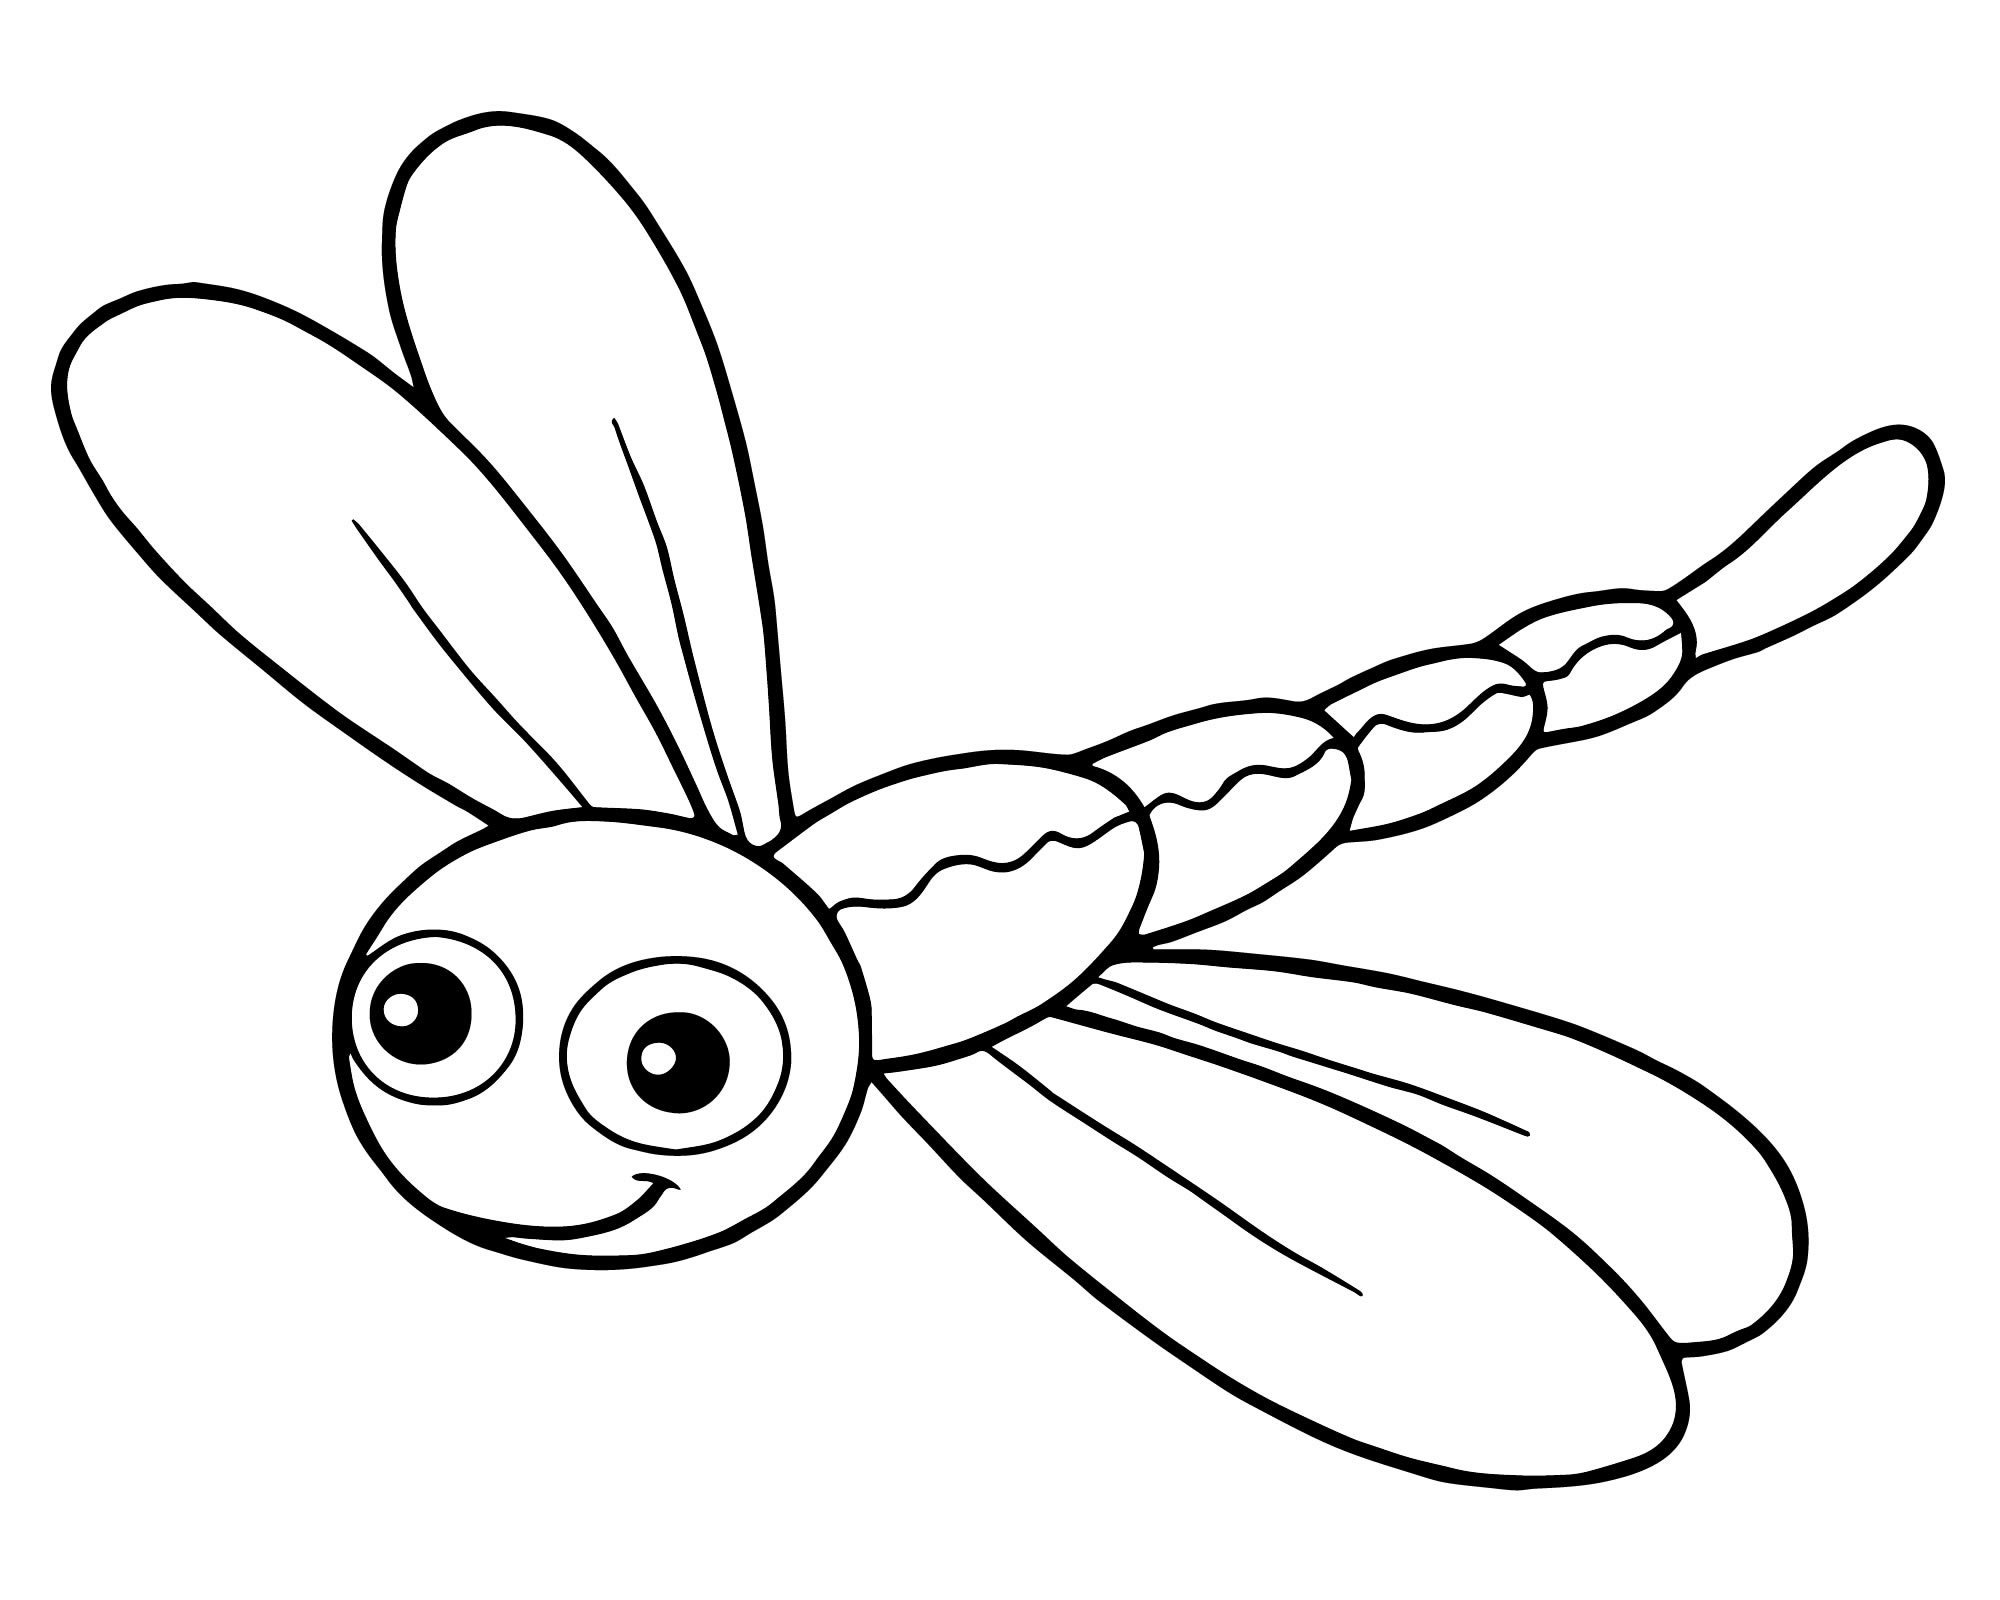 Раскраска насекомое ребенку 4 года. Раскраска насекомые для малышей. Стрекоза раскраска. Стрекоза раскраска для детей. Насекомые раскраска для детей.